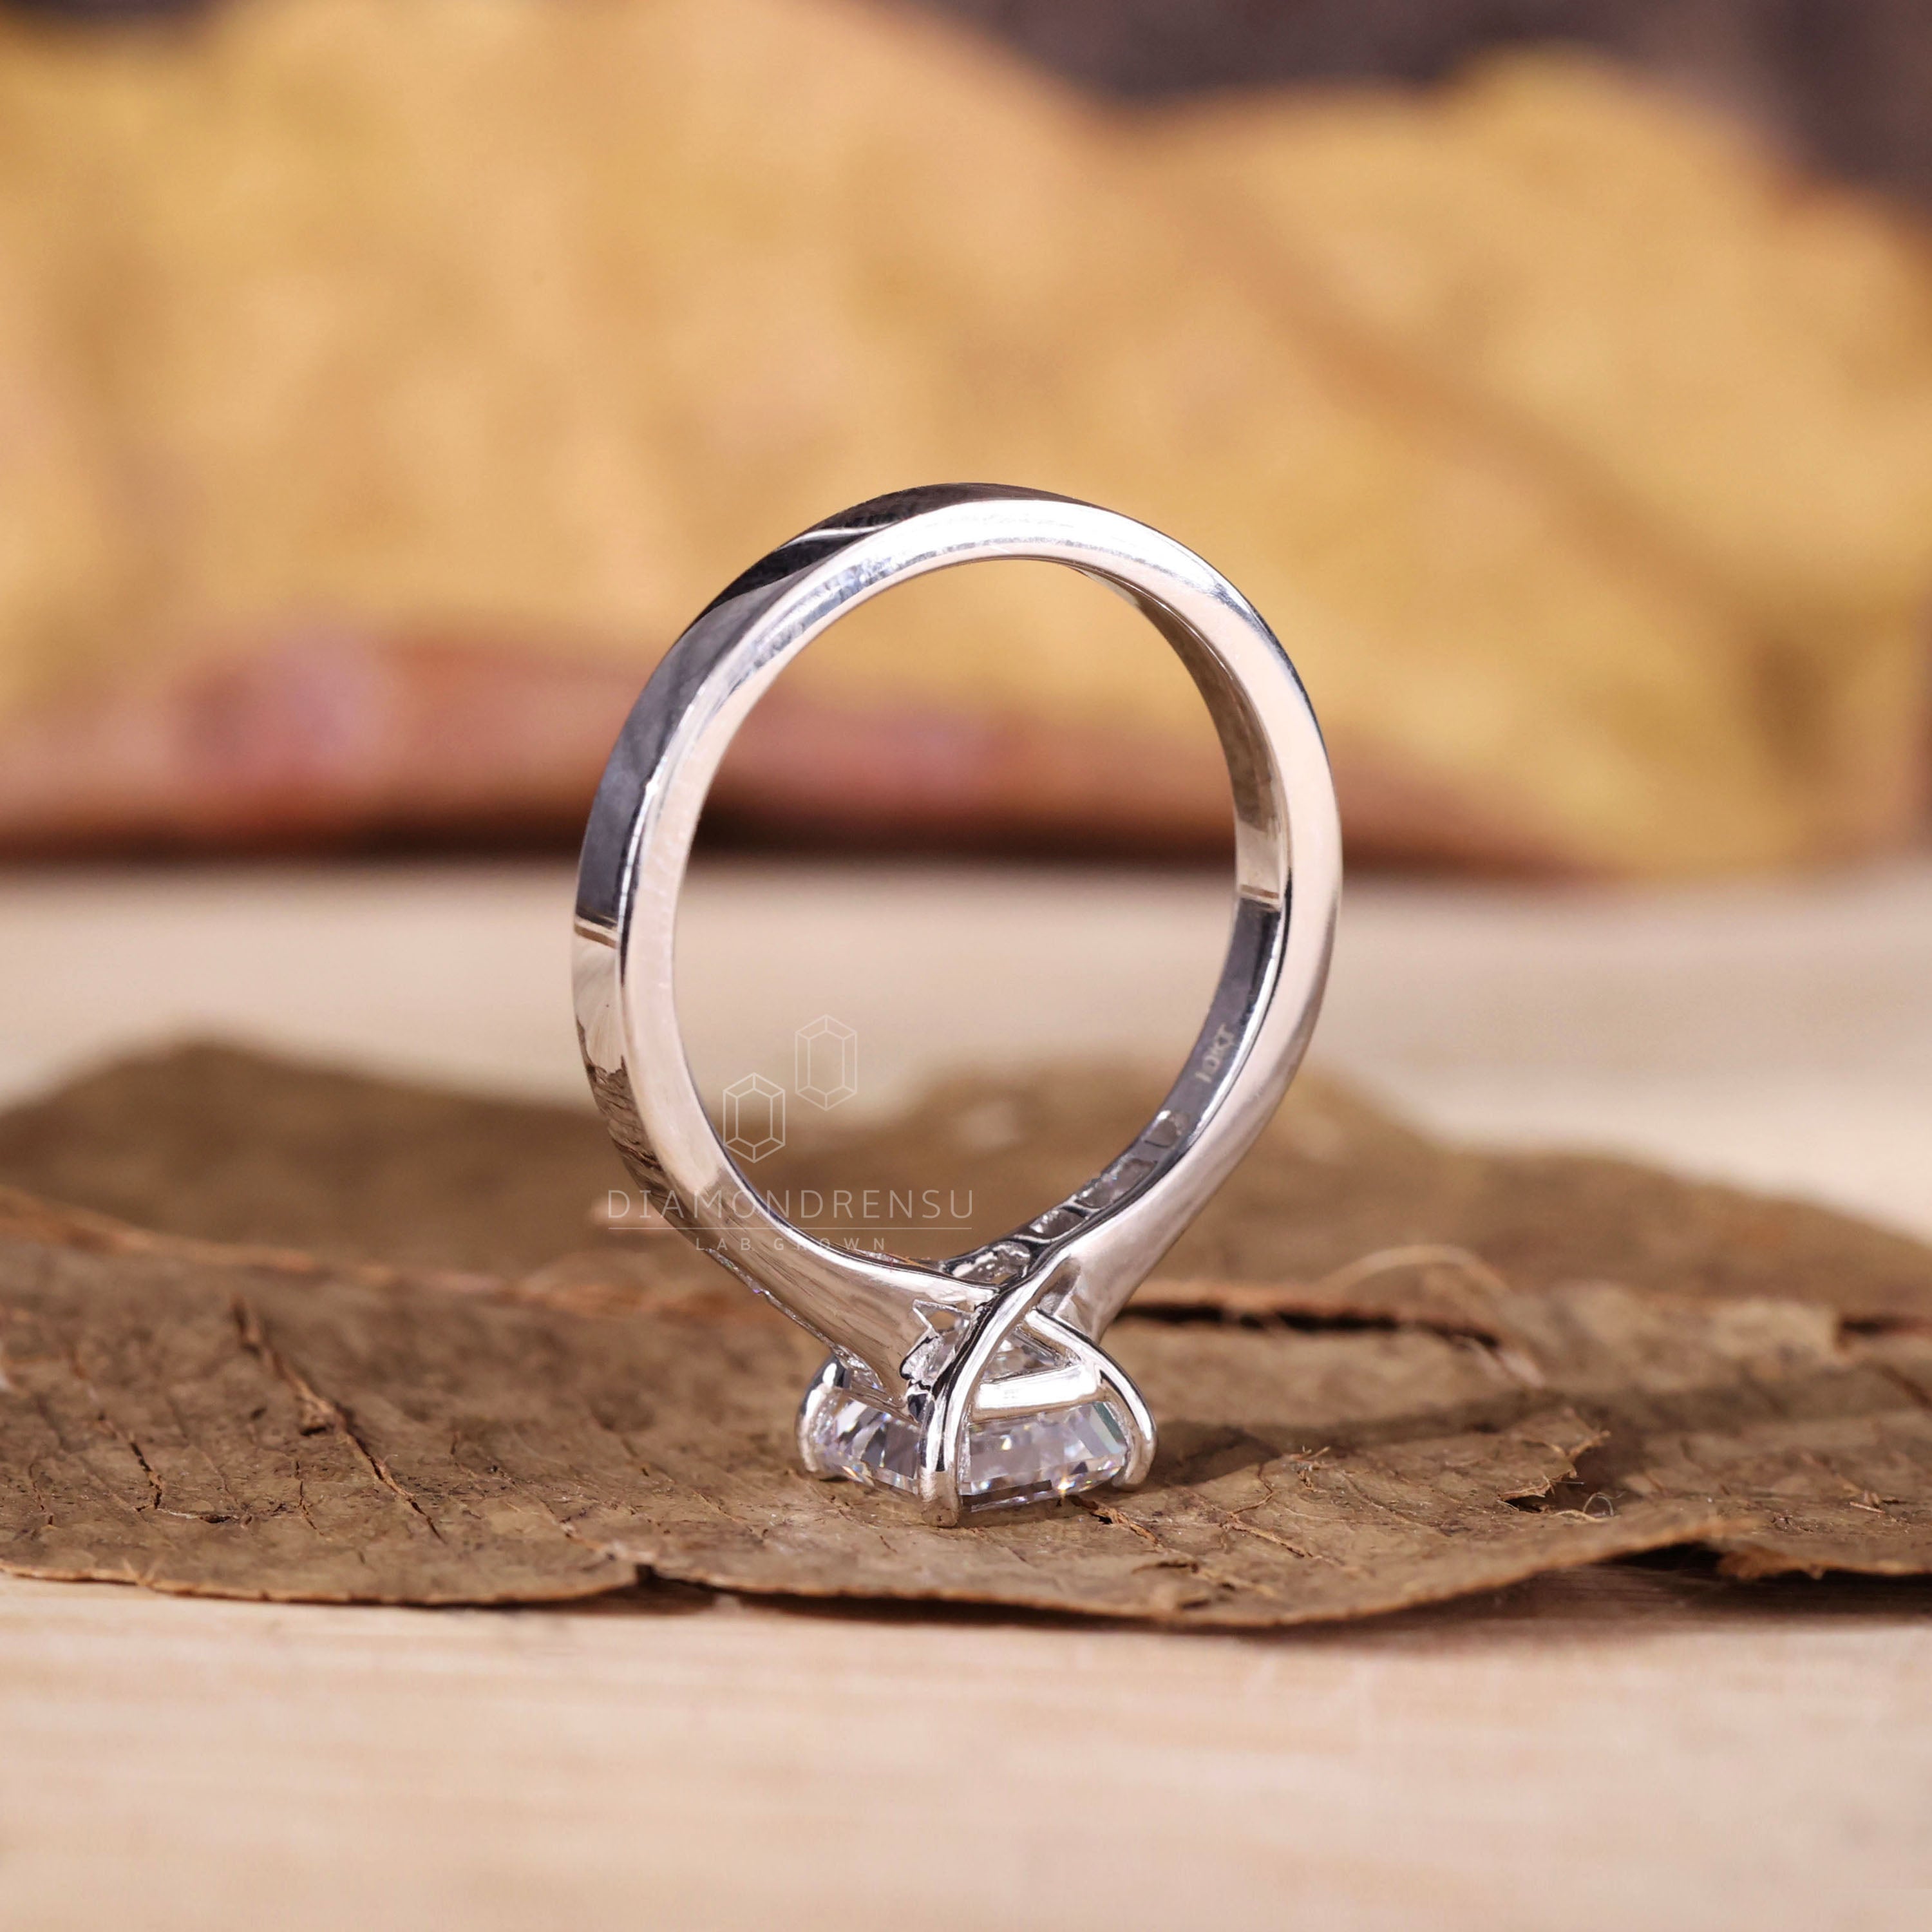 asscher diamond engagement ring - diamondrensu